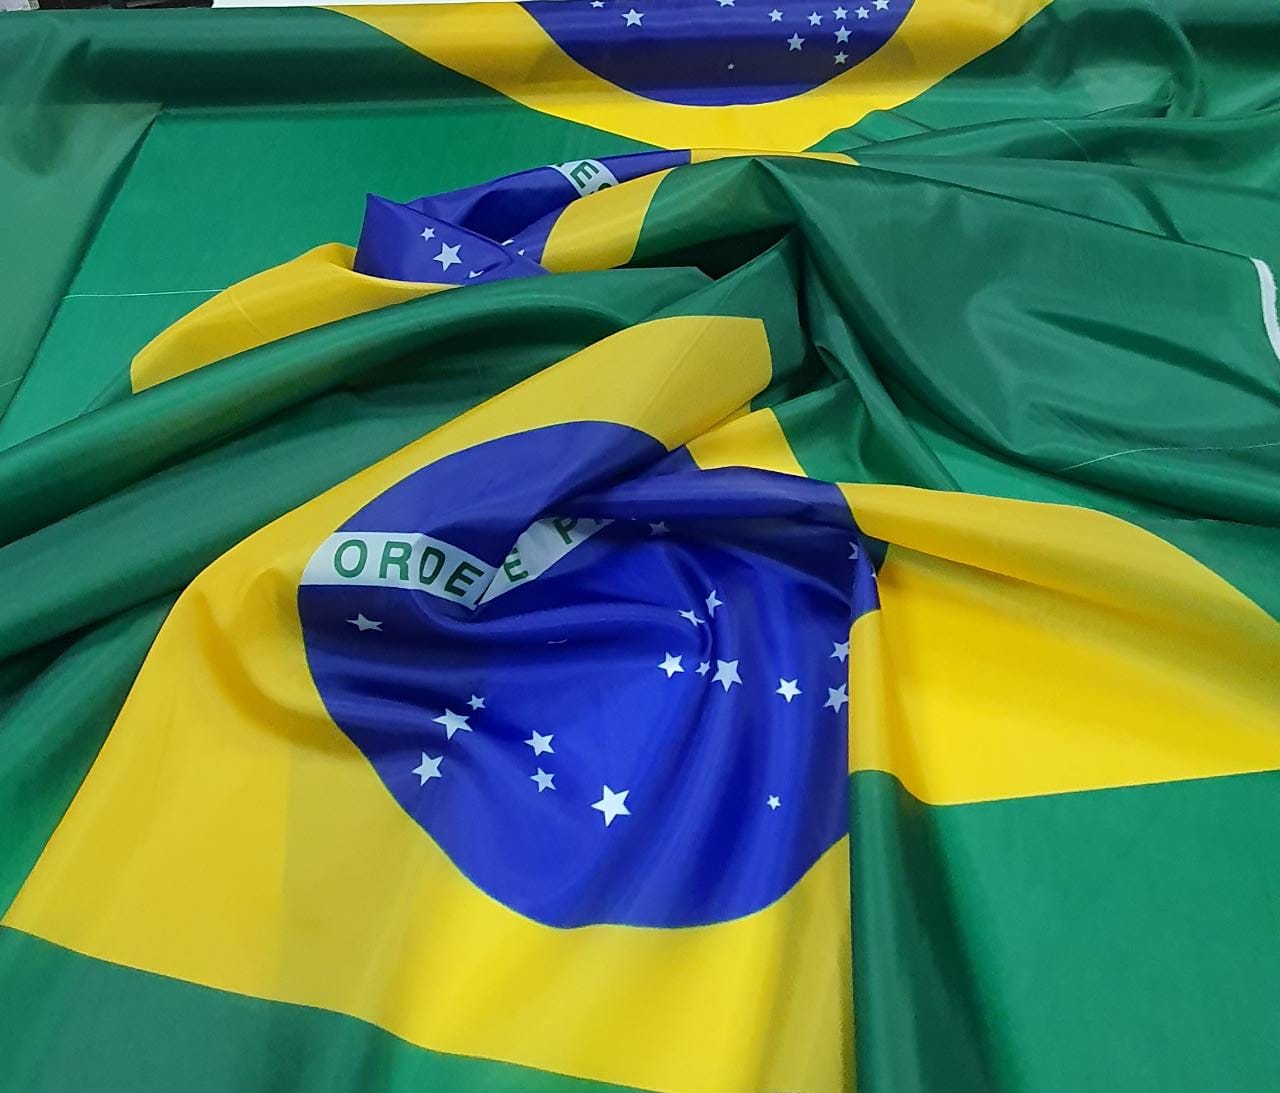 Bandeira do Brasil em Failete Extra Grande 3,00 X 1,80